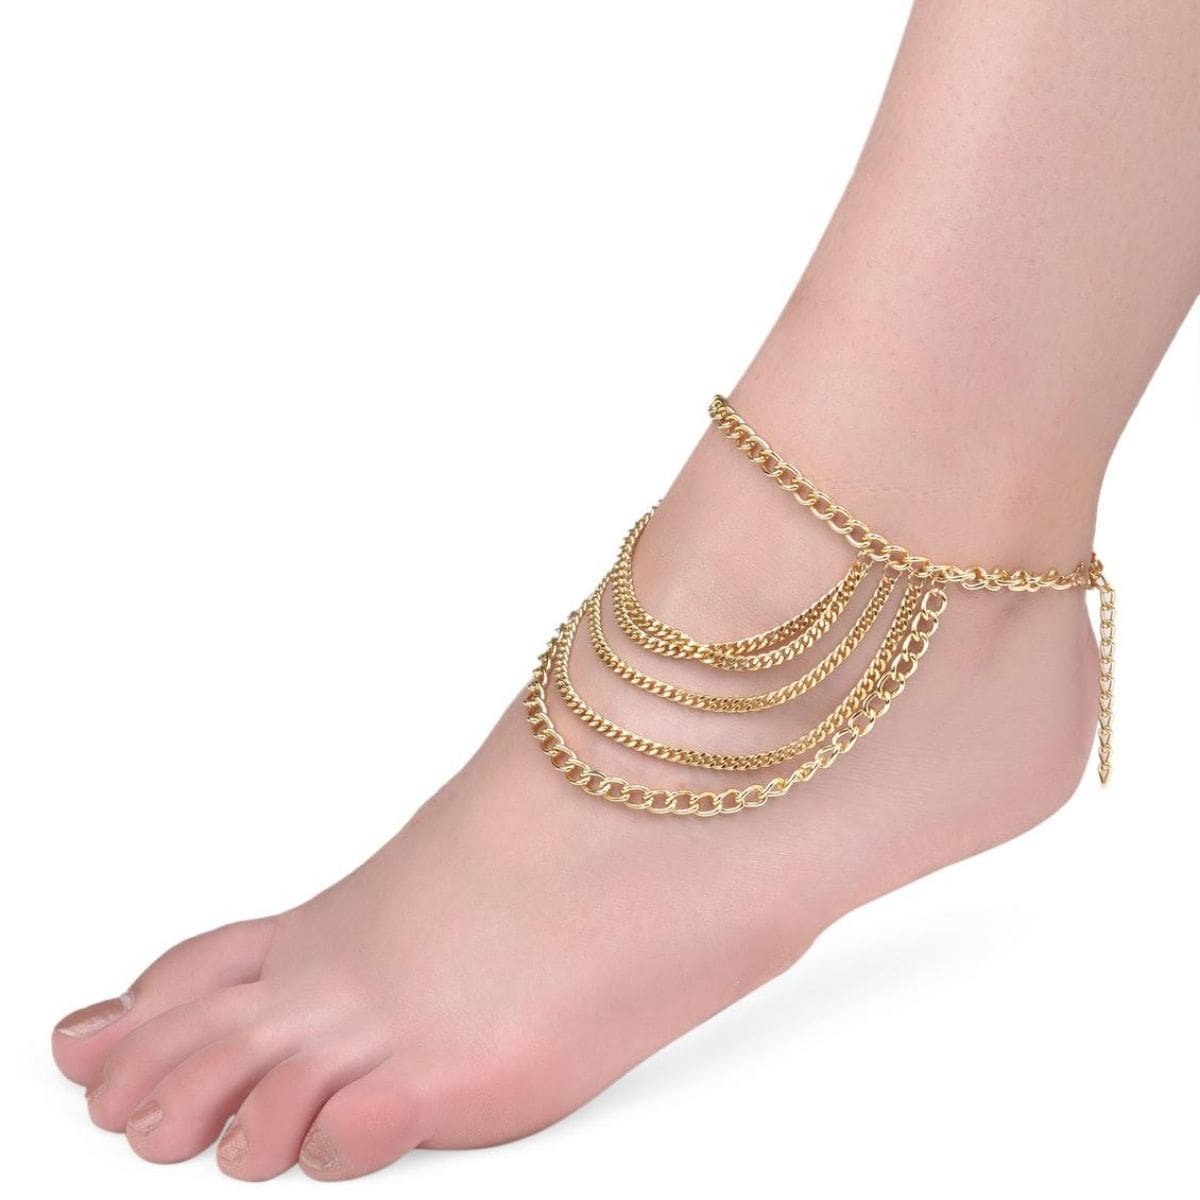 Buy Tassel Anklet Strap Online in India